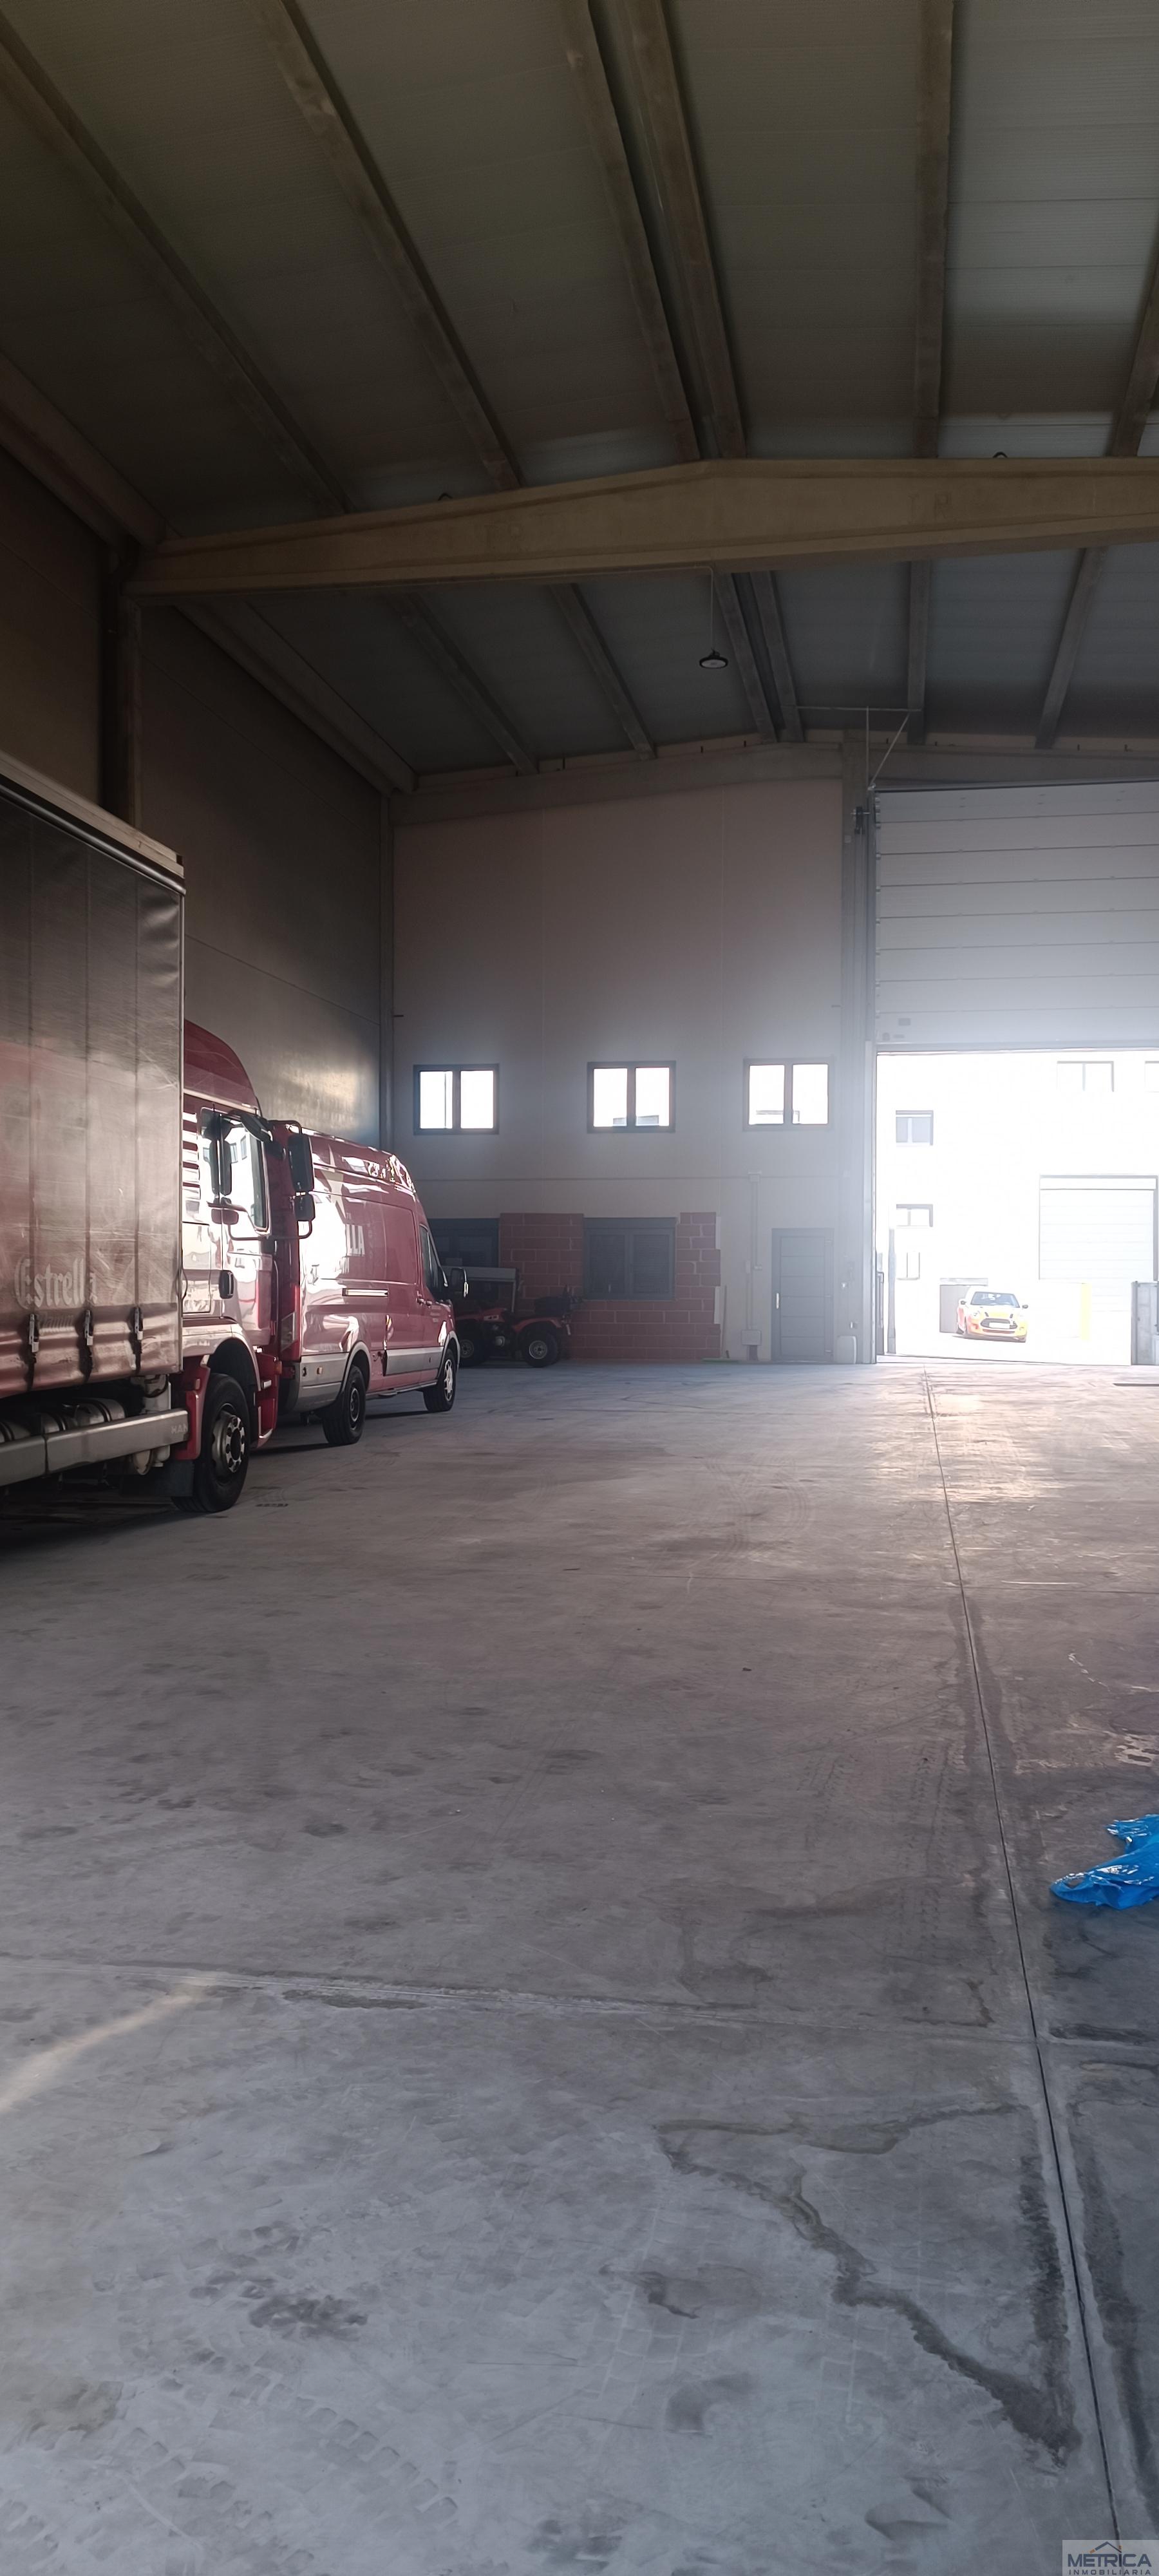 For sale of industrial plant/warehouse in Carbajosa de la Sagrada